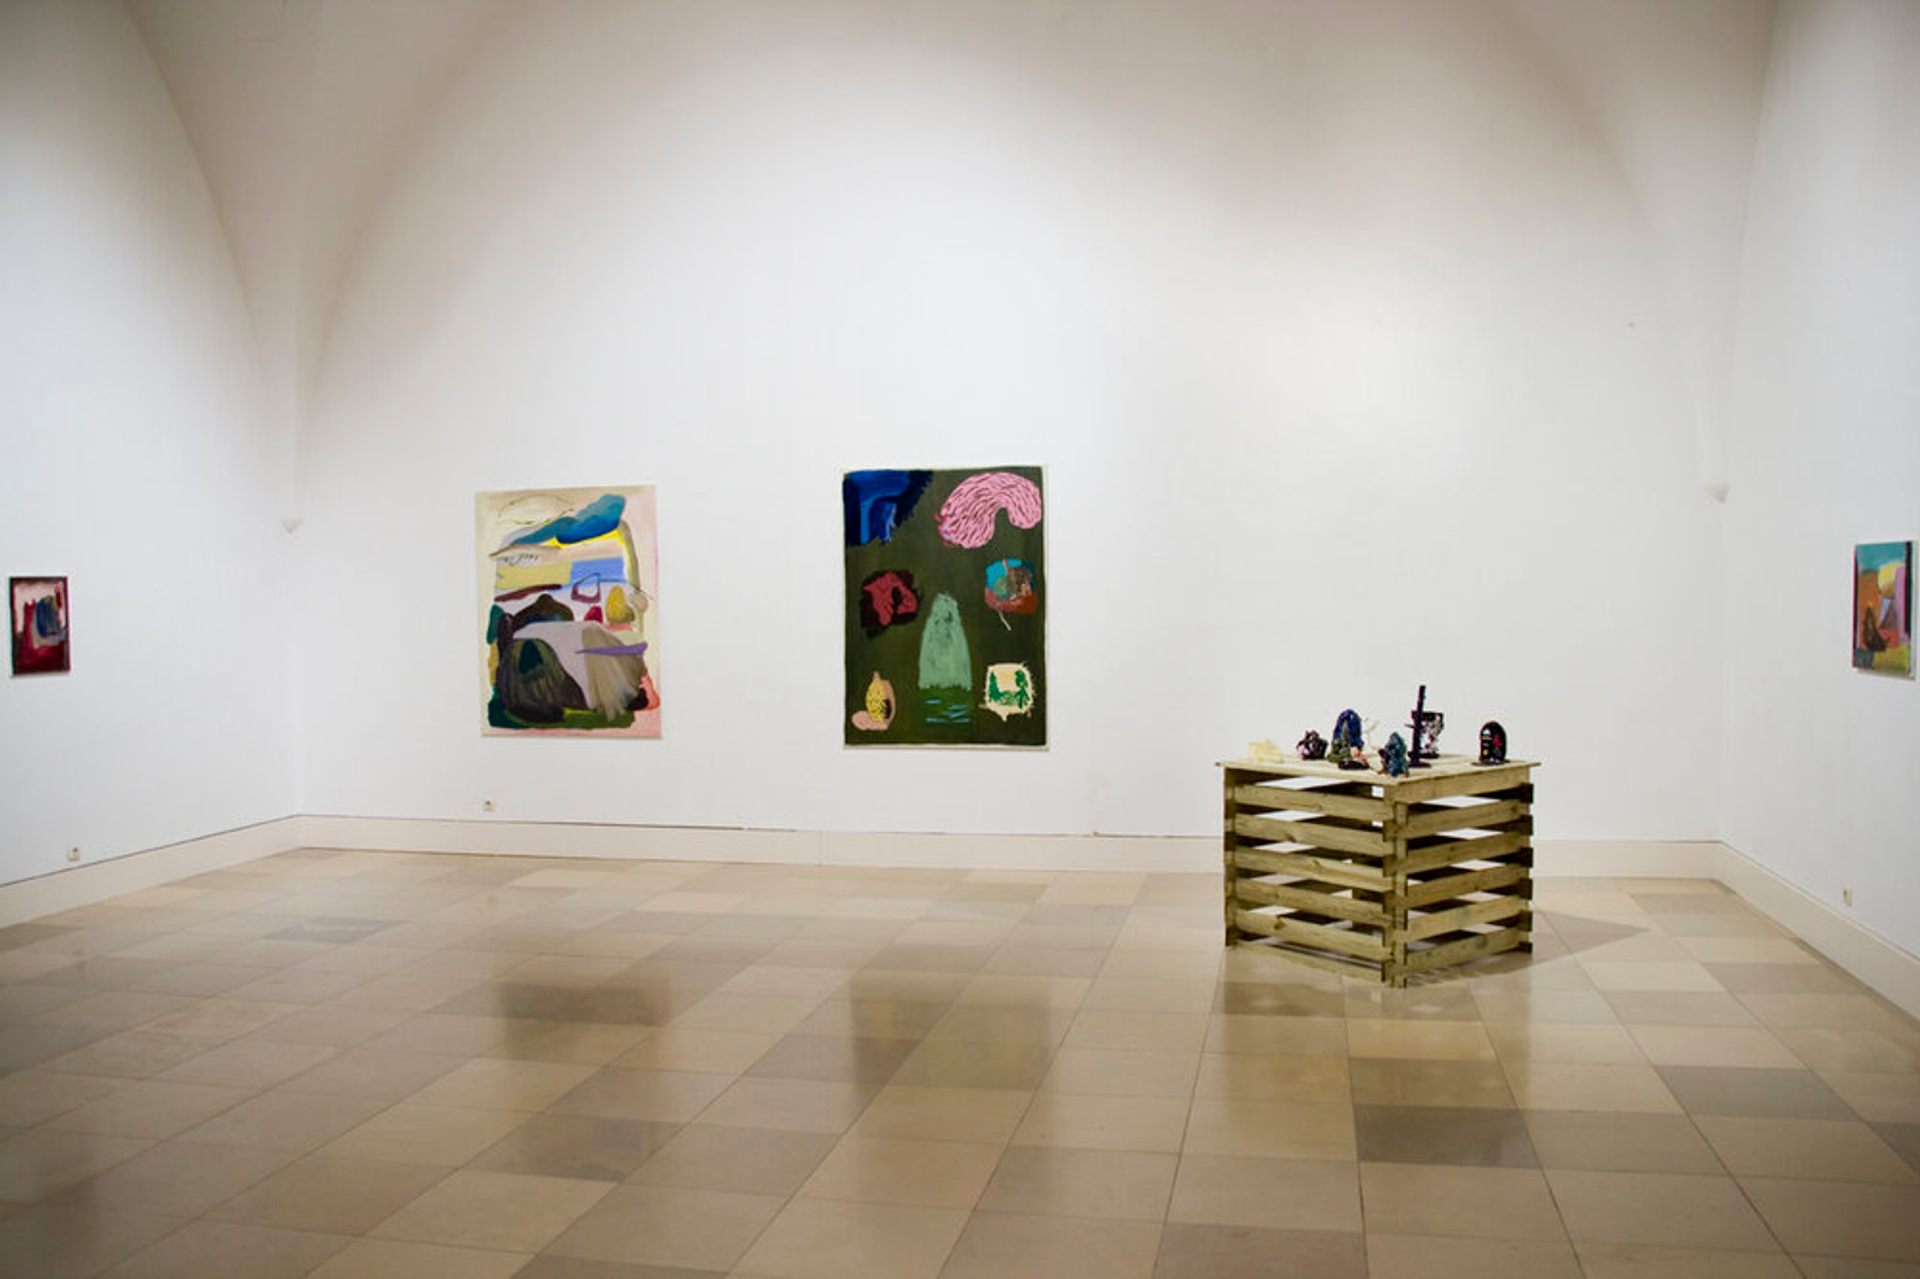 Die ersten Jahre der Professionalität 34, Galerie der Künstler, Munich, DE 2015